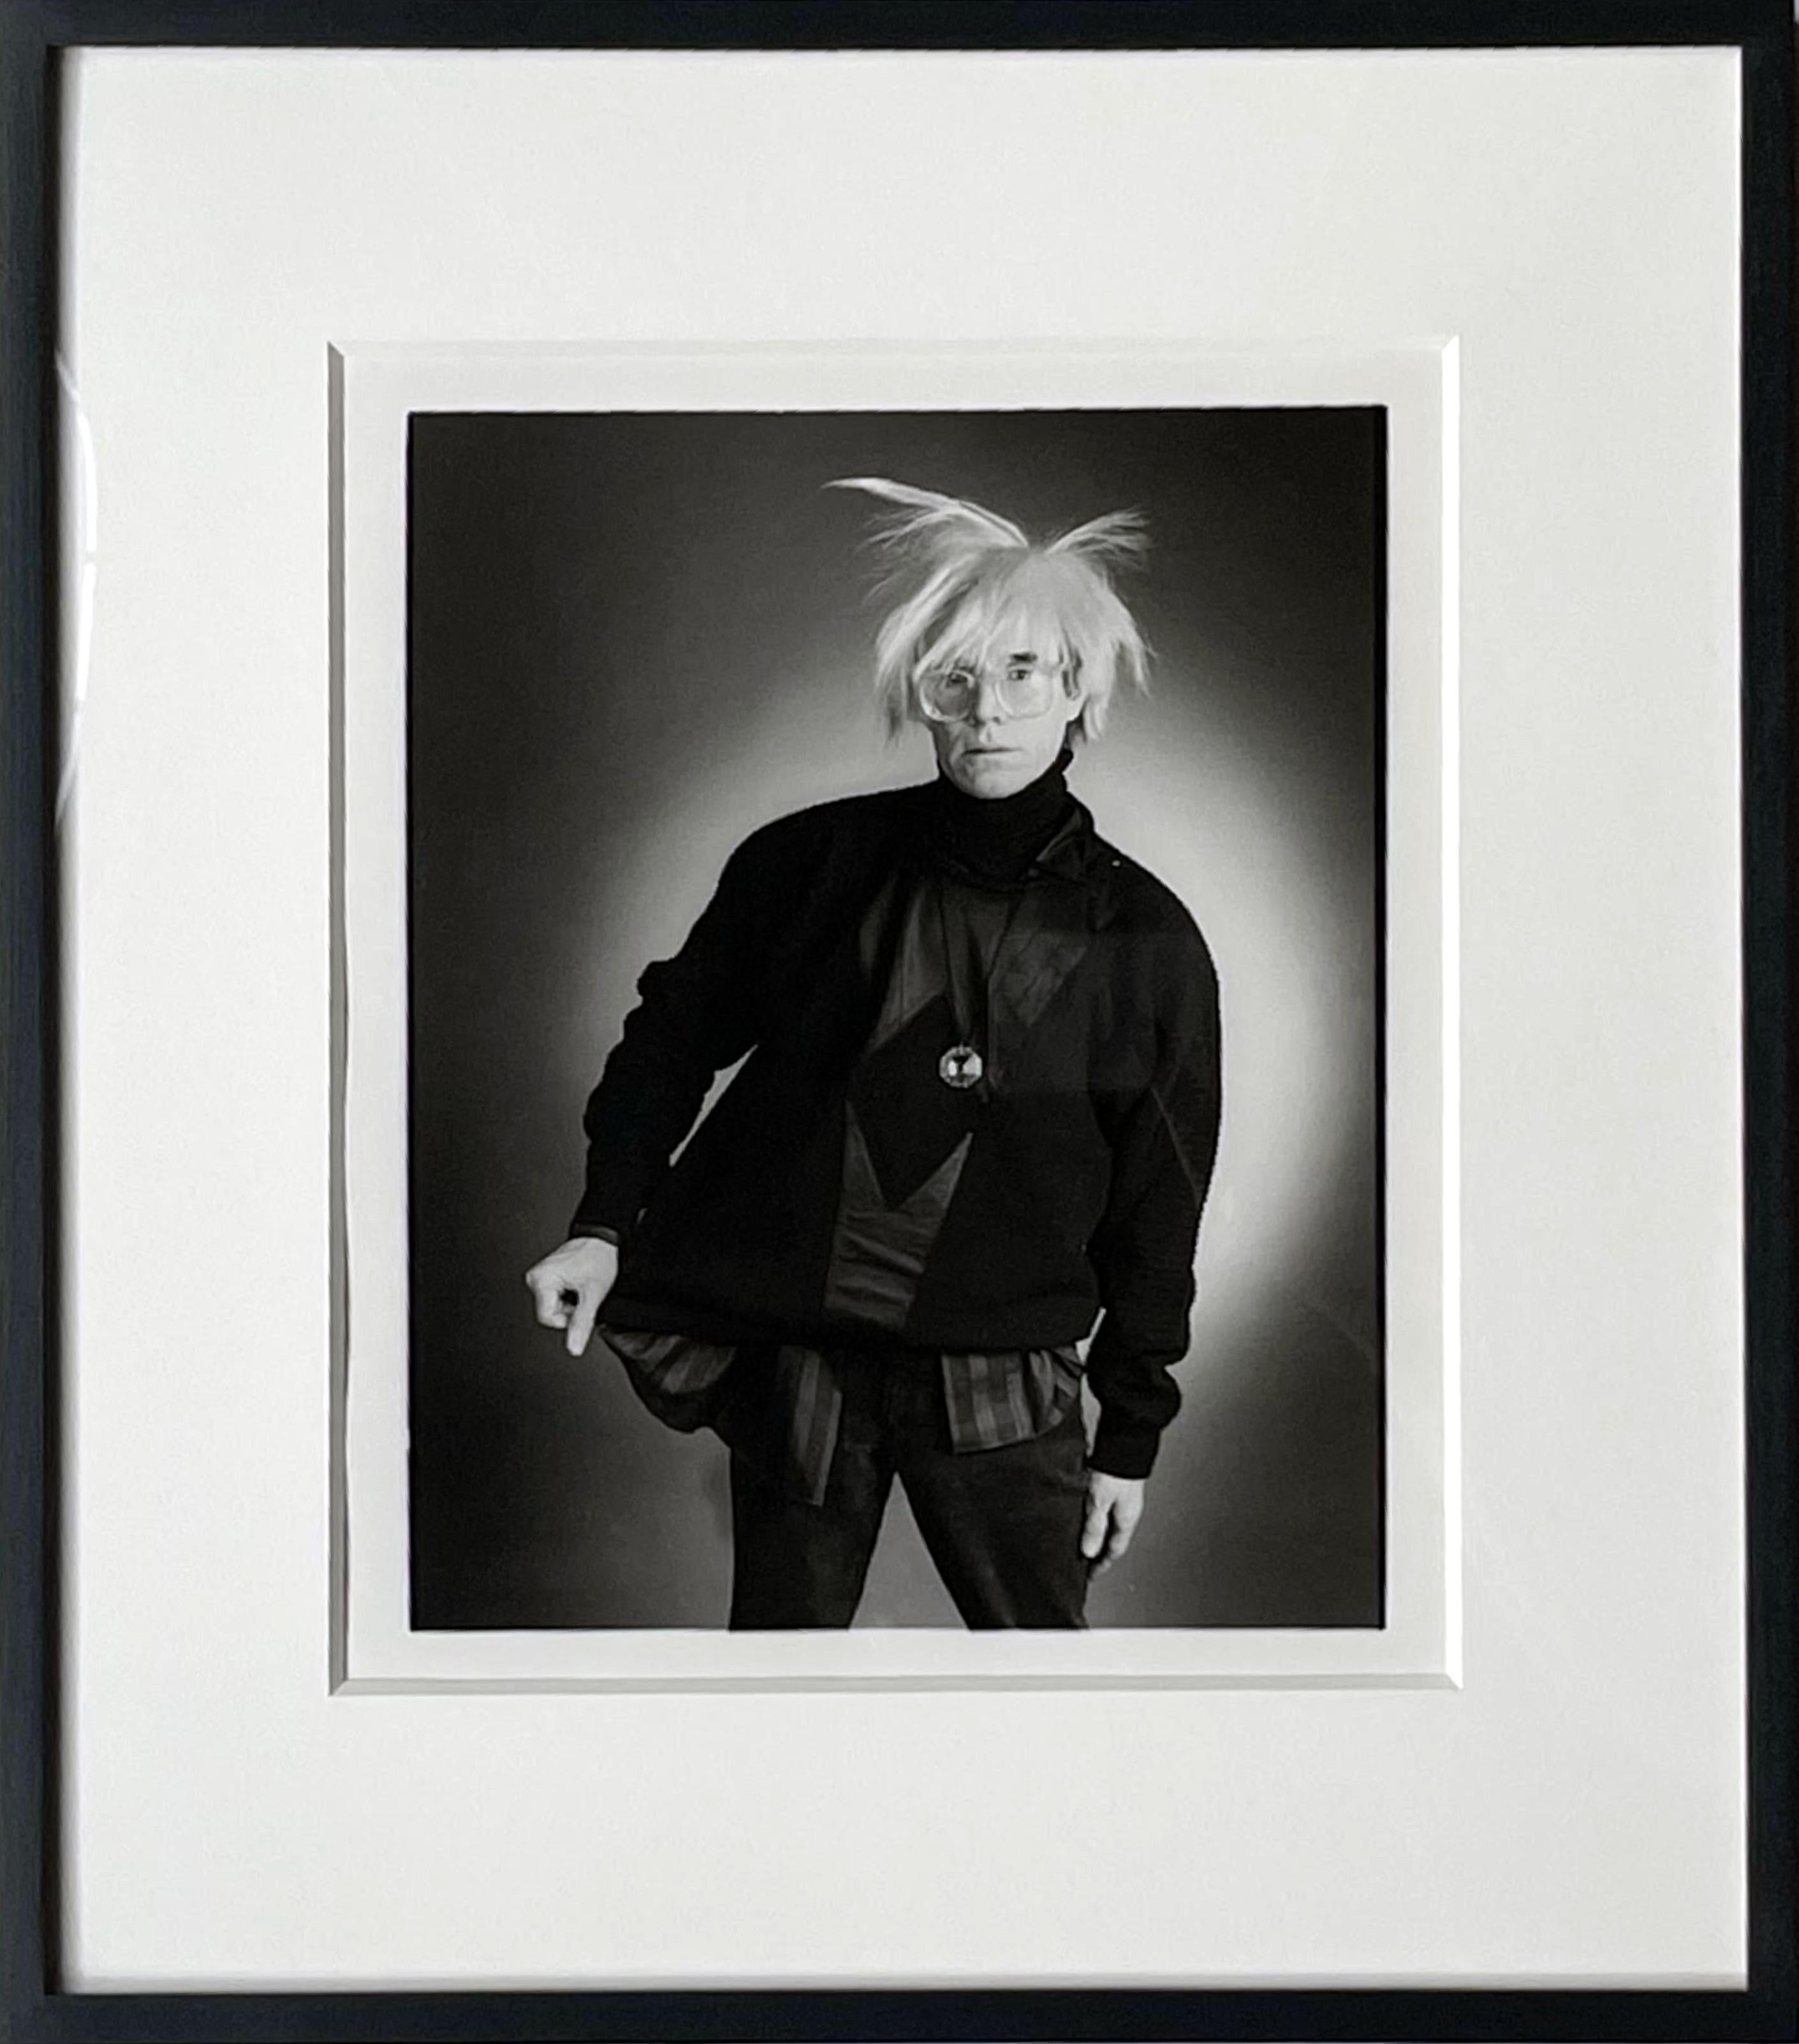 Porträt von Andy Warhol, handsigniert von BOTH Andy Warhol und Christopher Makos – Photograph von Christopher Makos and Andy Warhol